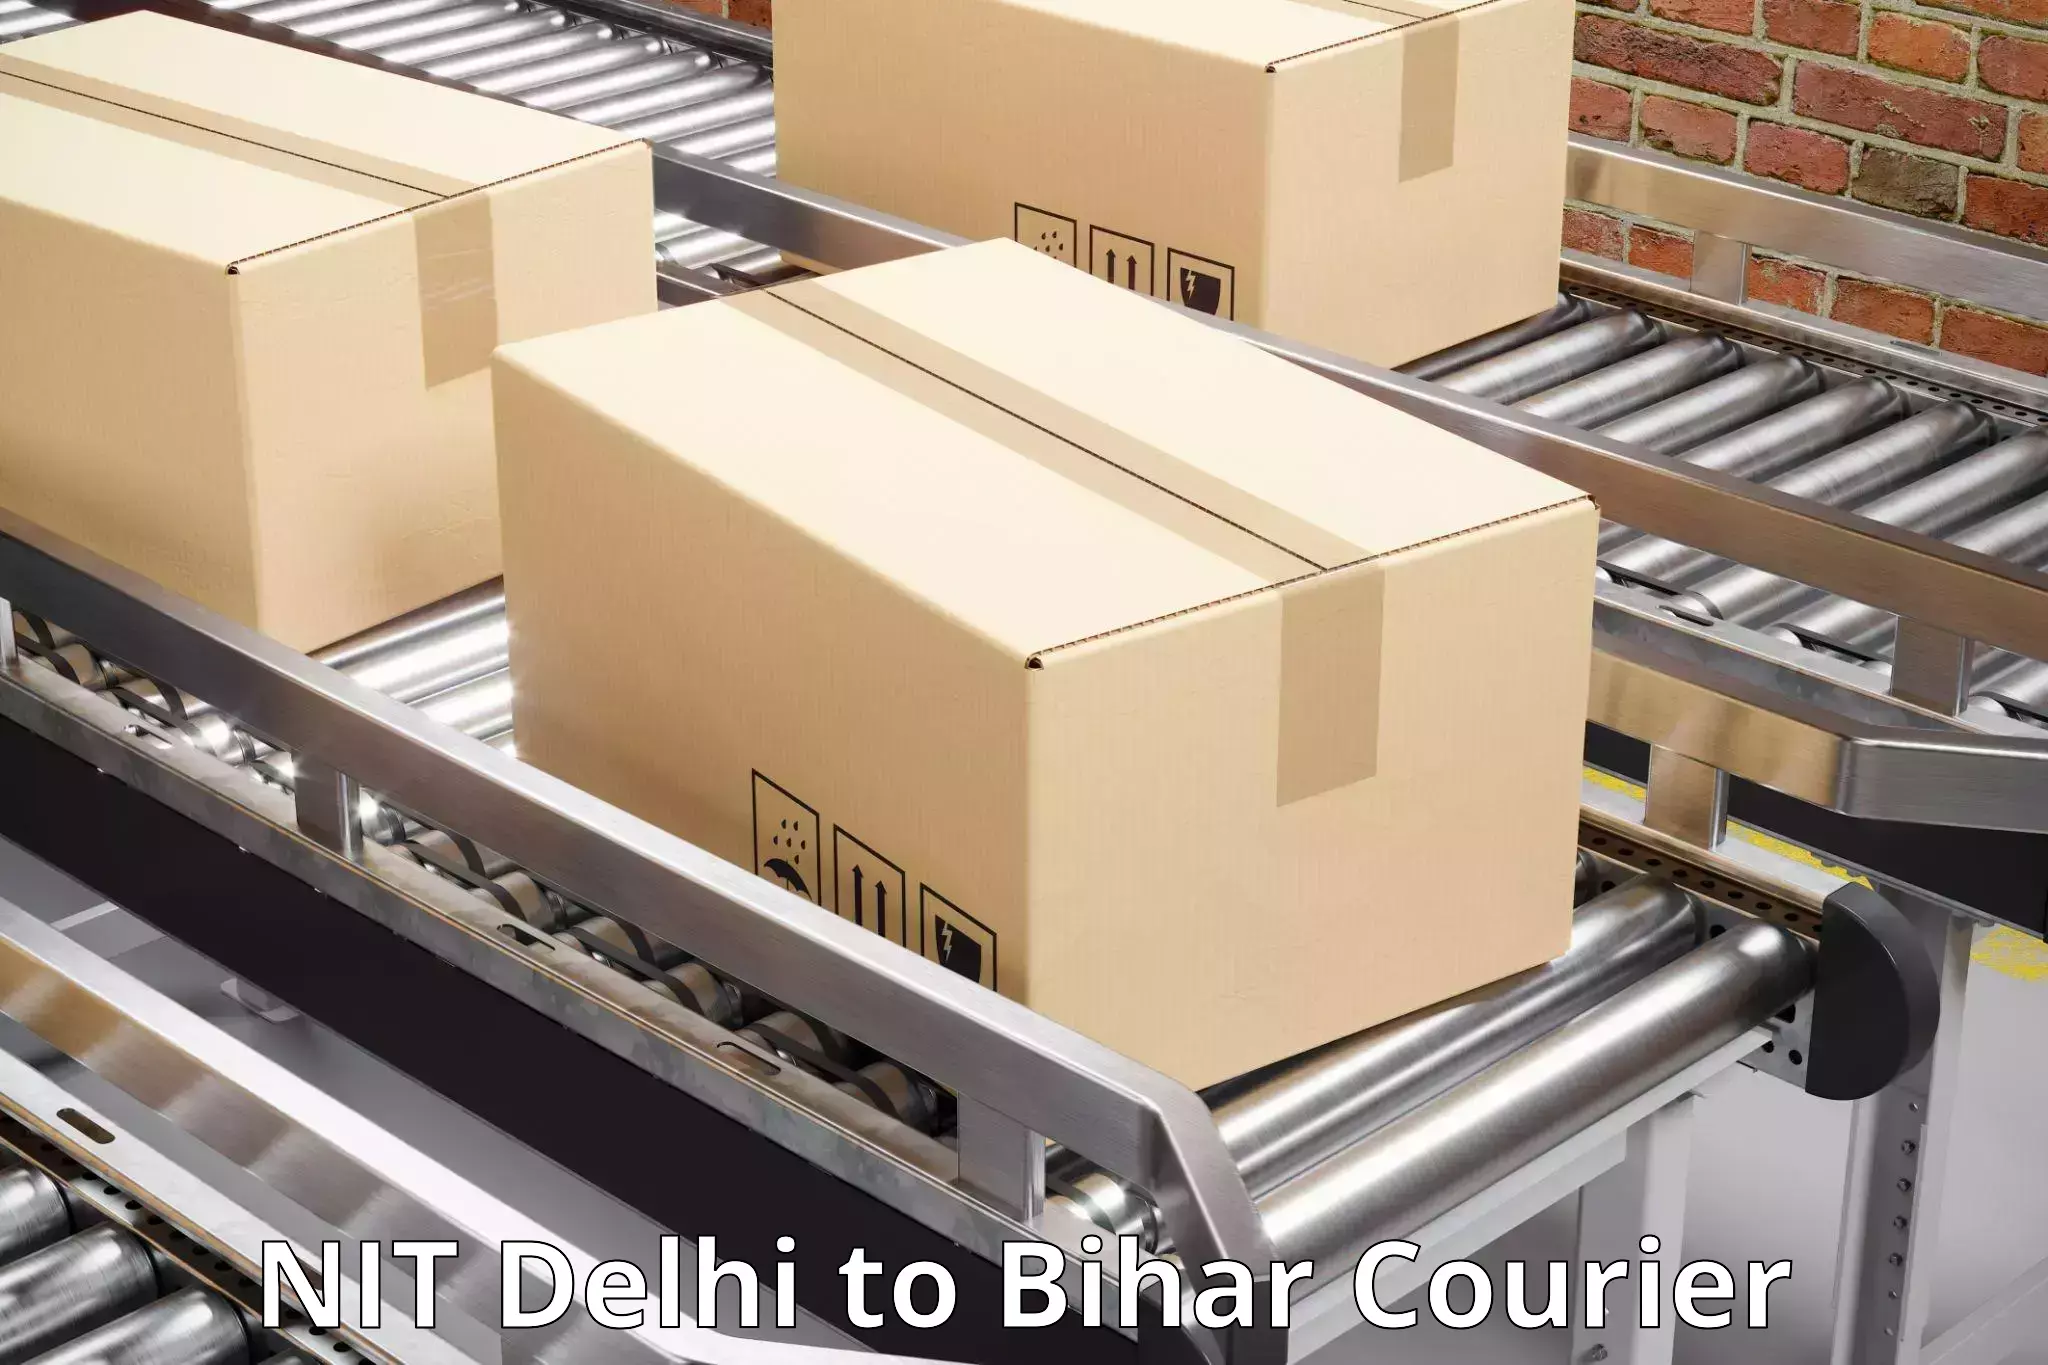 Cargo delivery service NIT Delhi to Purnia